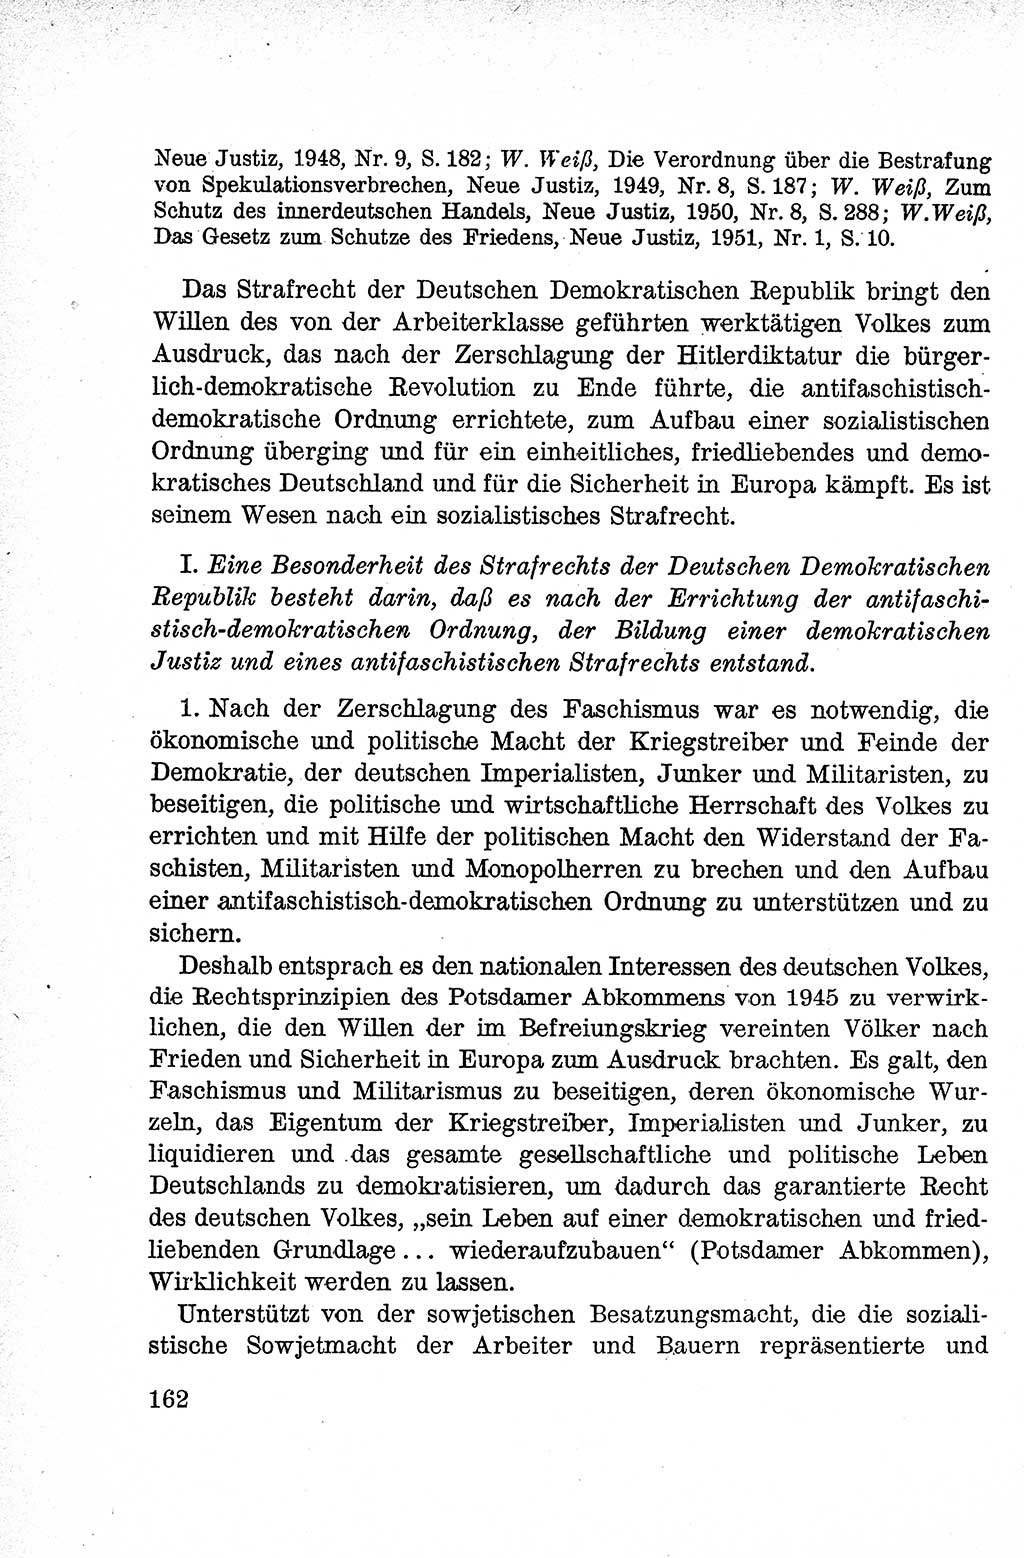 Lehrbuch des Strafrechts der Deutschen Demokratischen Republik (DDR), Allgemeiner Teil 1959, Seite 162 (Lb. Strafr. DDR AT 1959, S. 162)